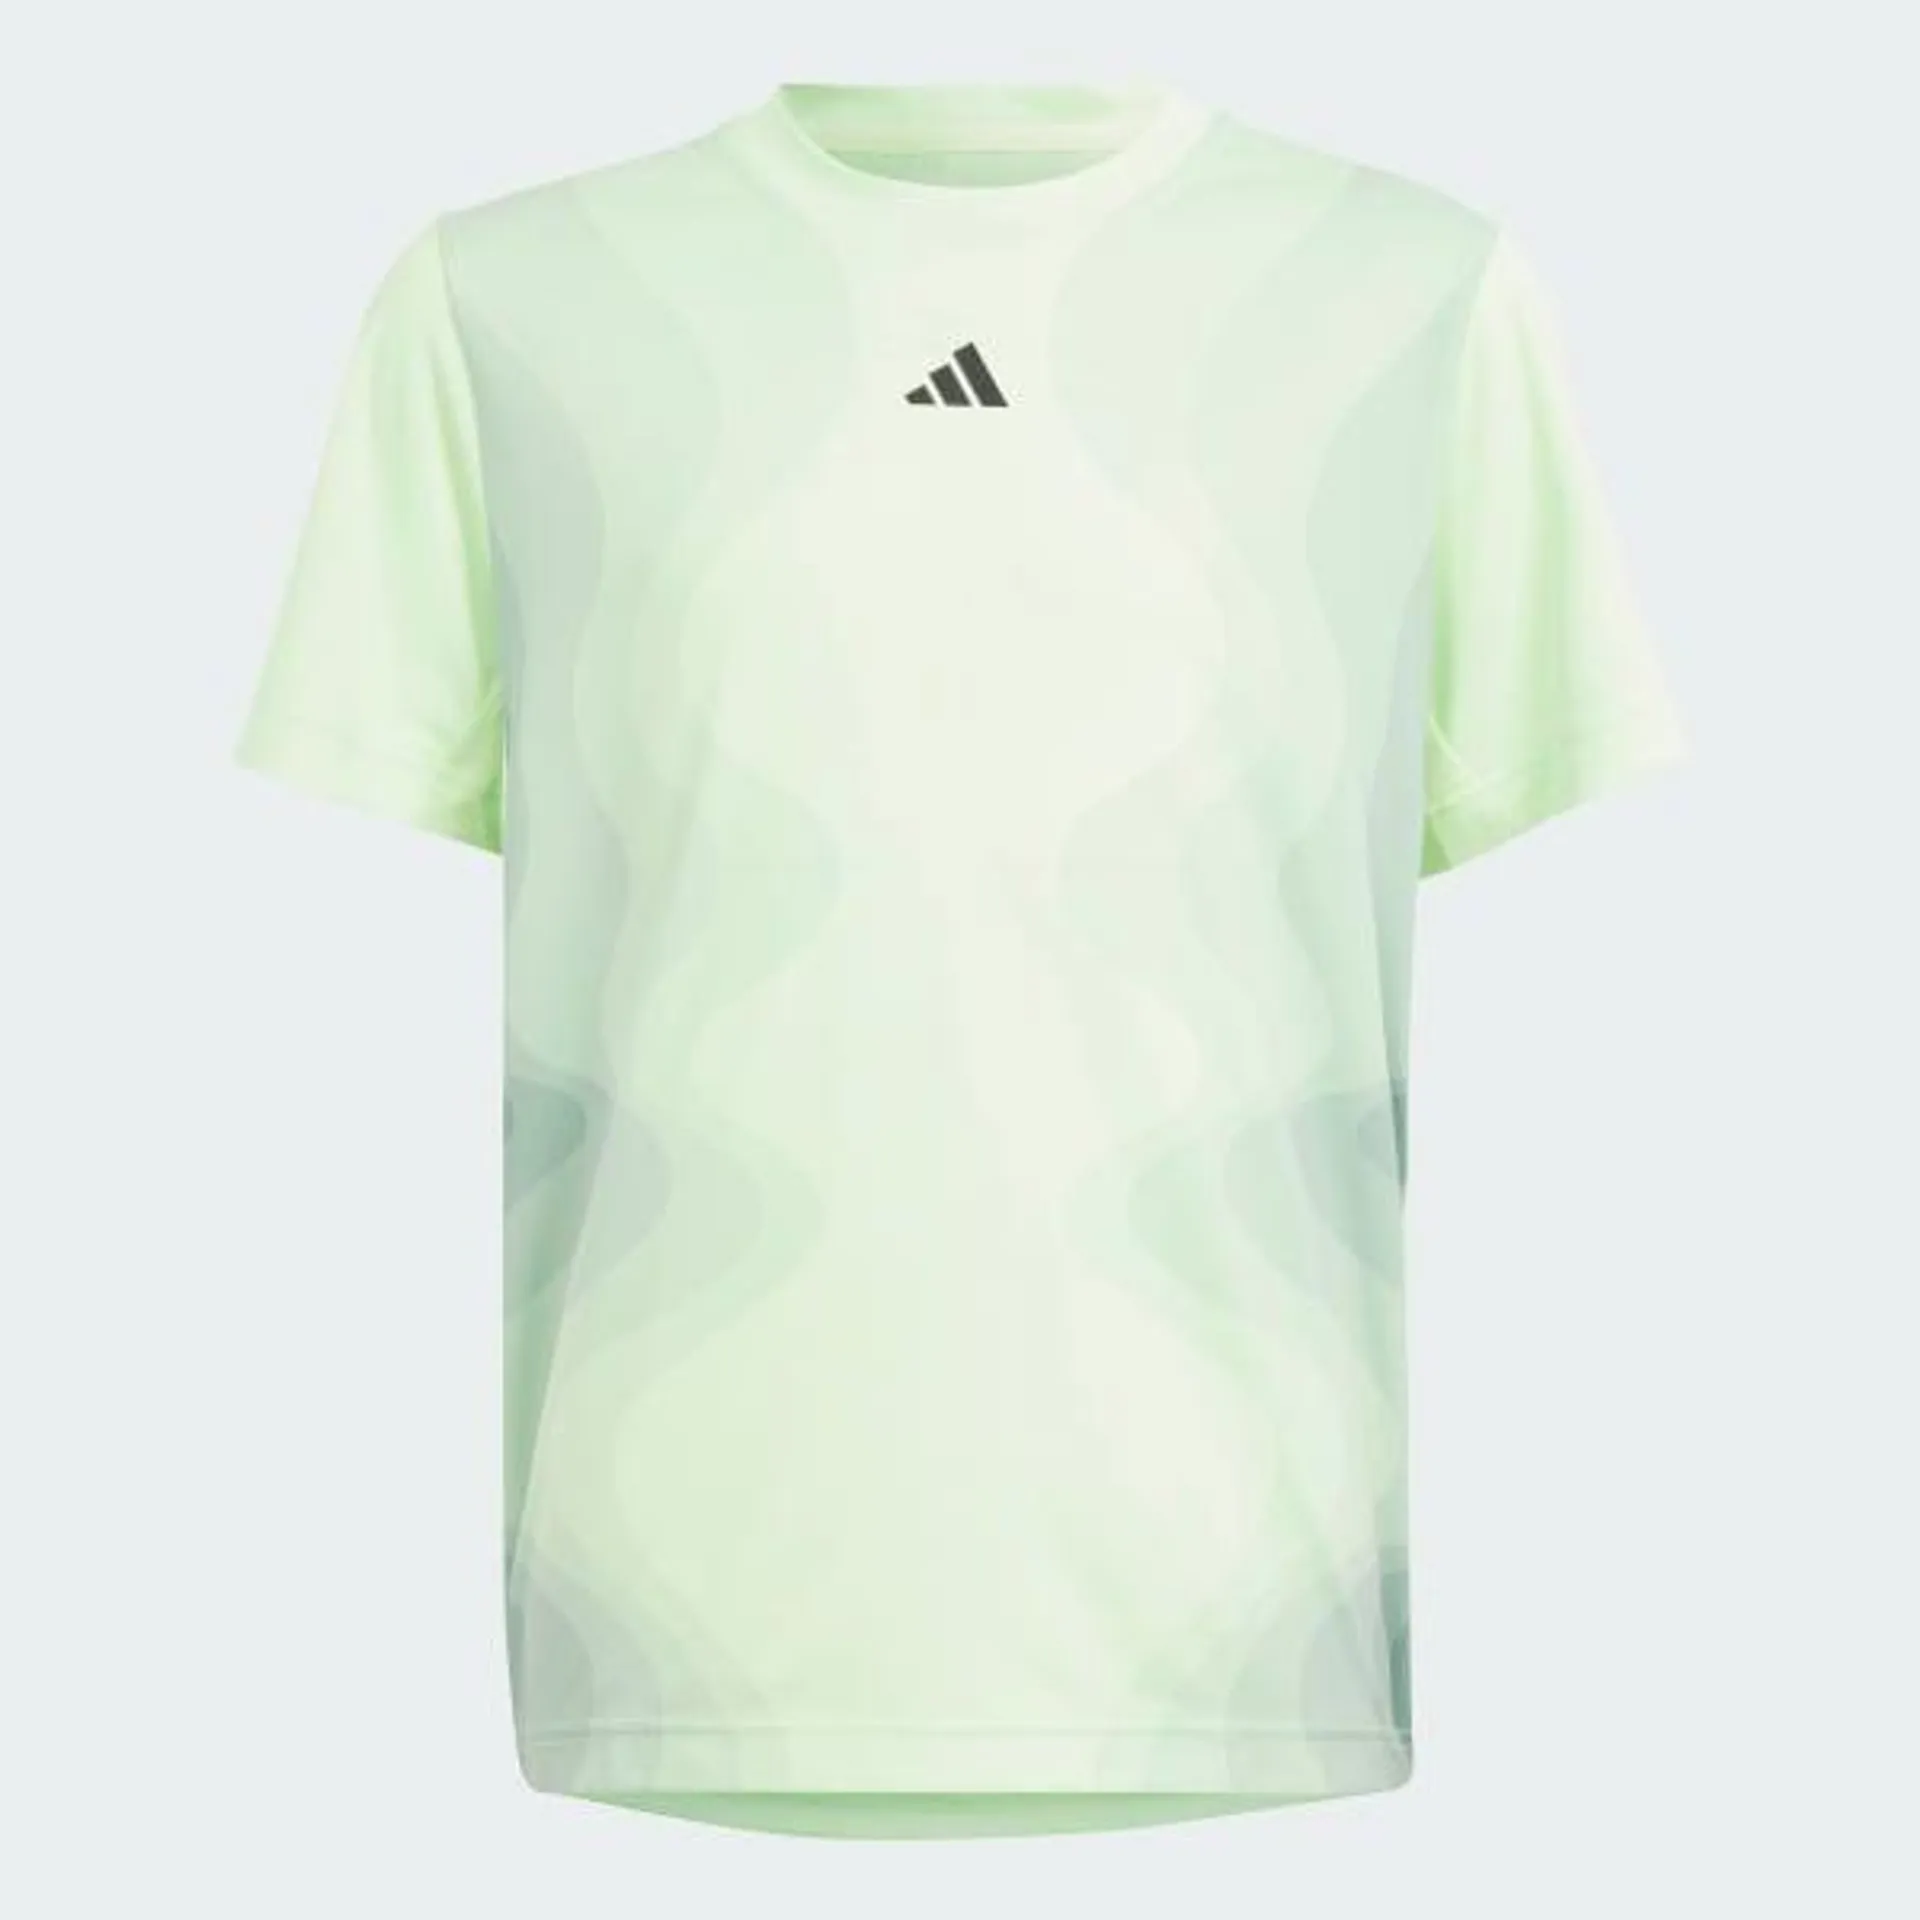 Tennis Pro Kids T-Shirt